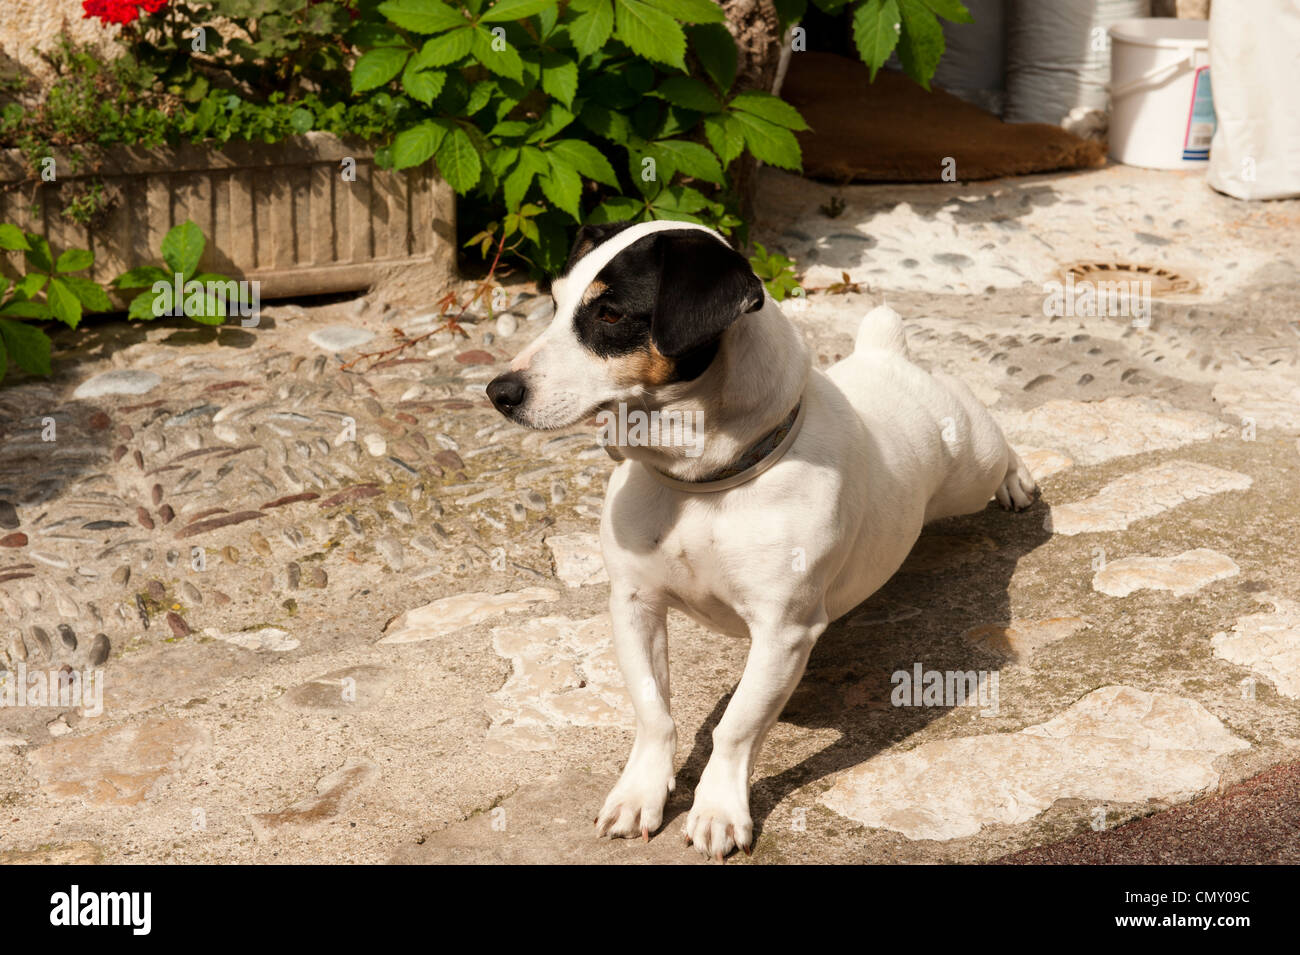 Un perro blanco con manchas negras y orejas tan cerca de sus ojos. El perro está apoyado sobre sus patas traseras. Foto de stock